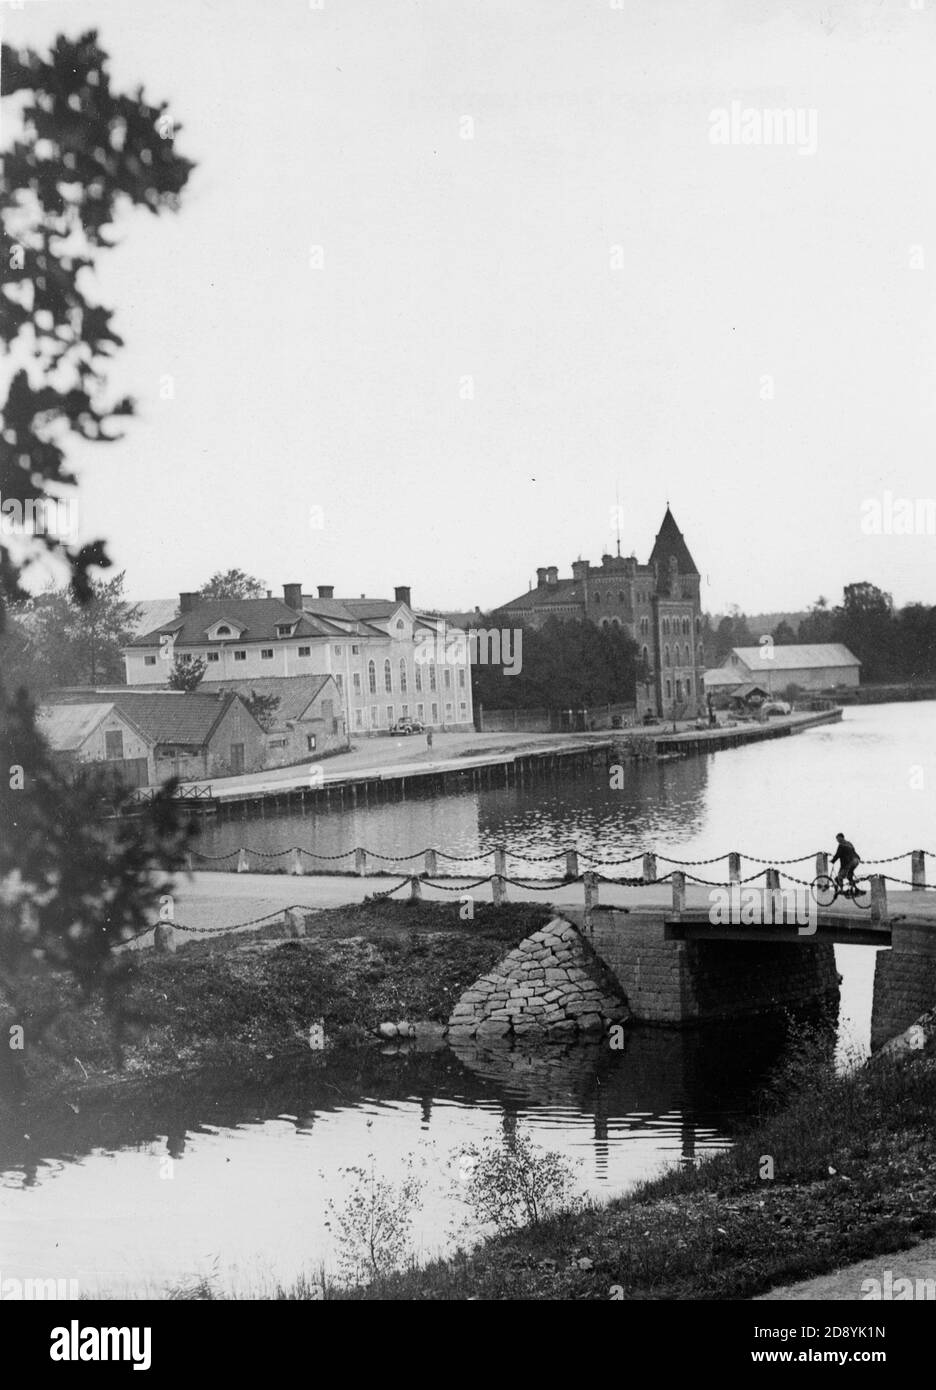 Historische und alte Bilder von Gustavsberg, Stockholm, Schweden. Weltweit bekannt für sein Porzellan. Stockfoto